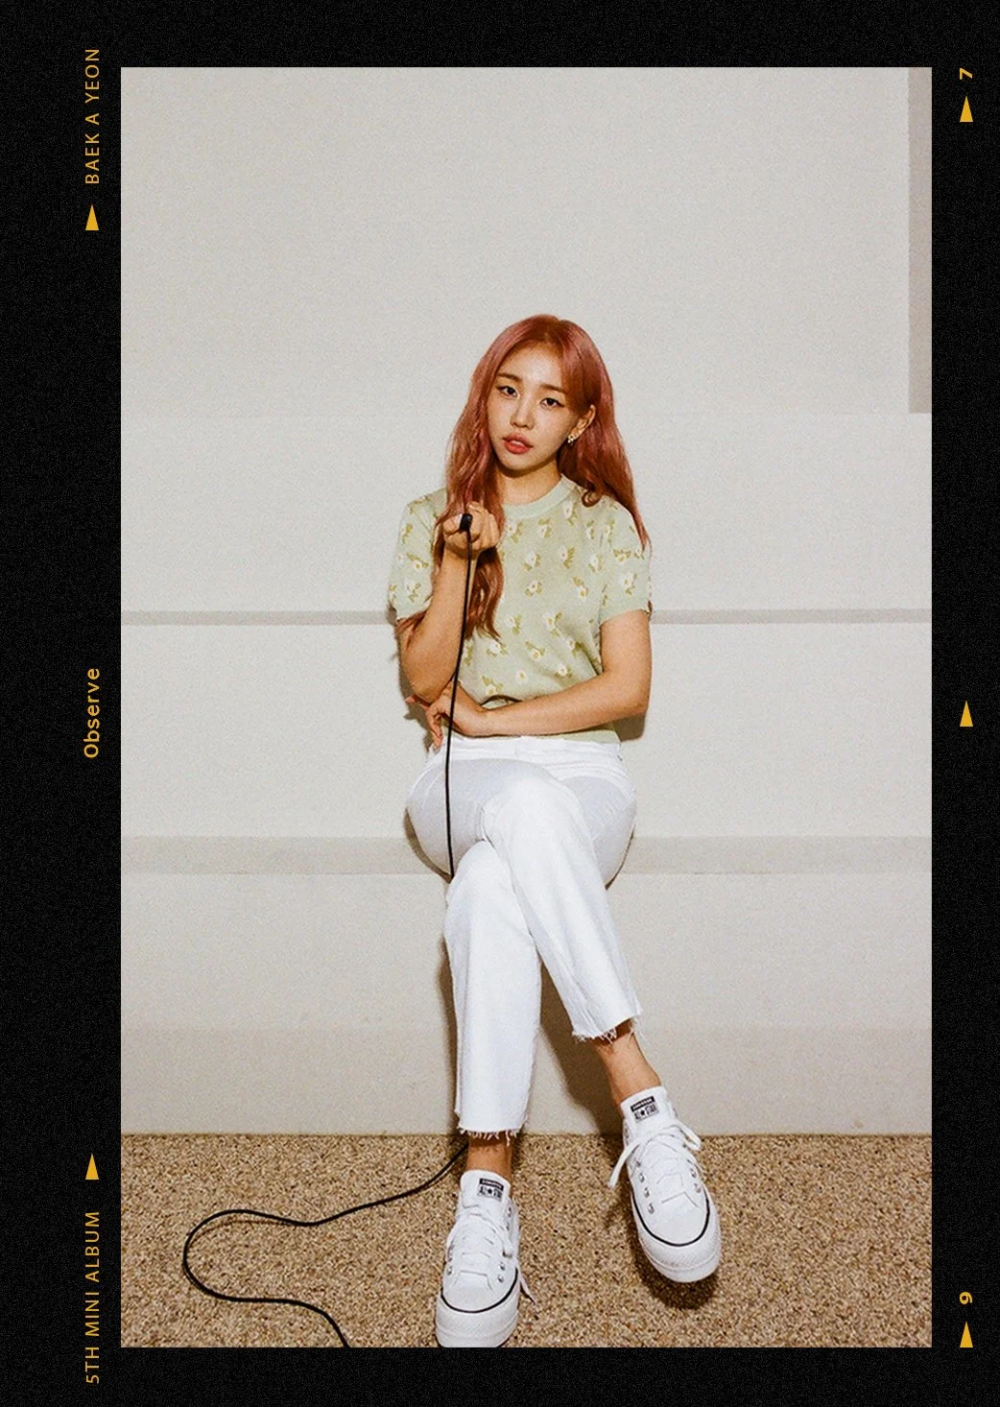 Baek Ah Yeon casual teaser photos for her 5th mini-album 'Observe'